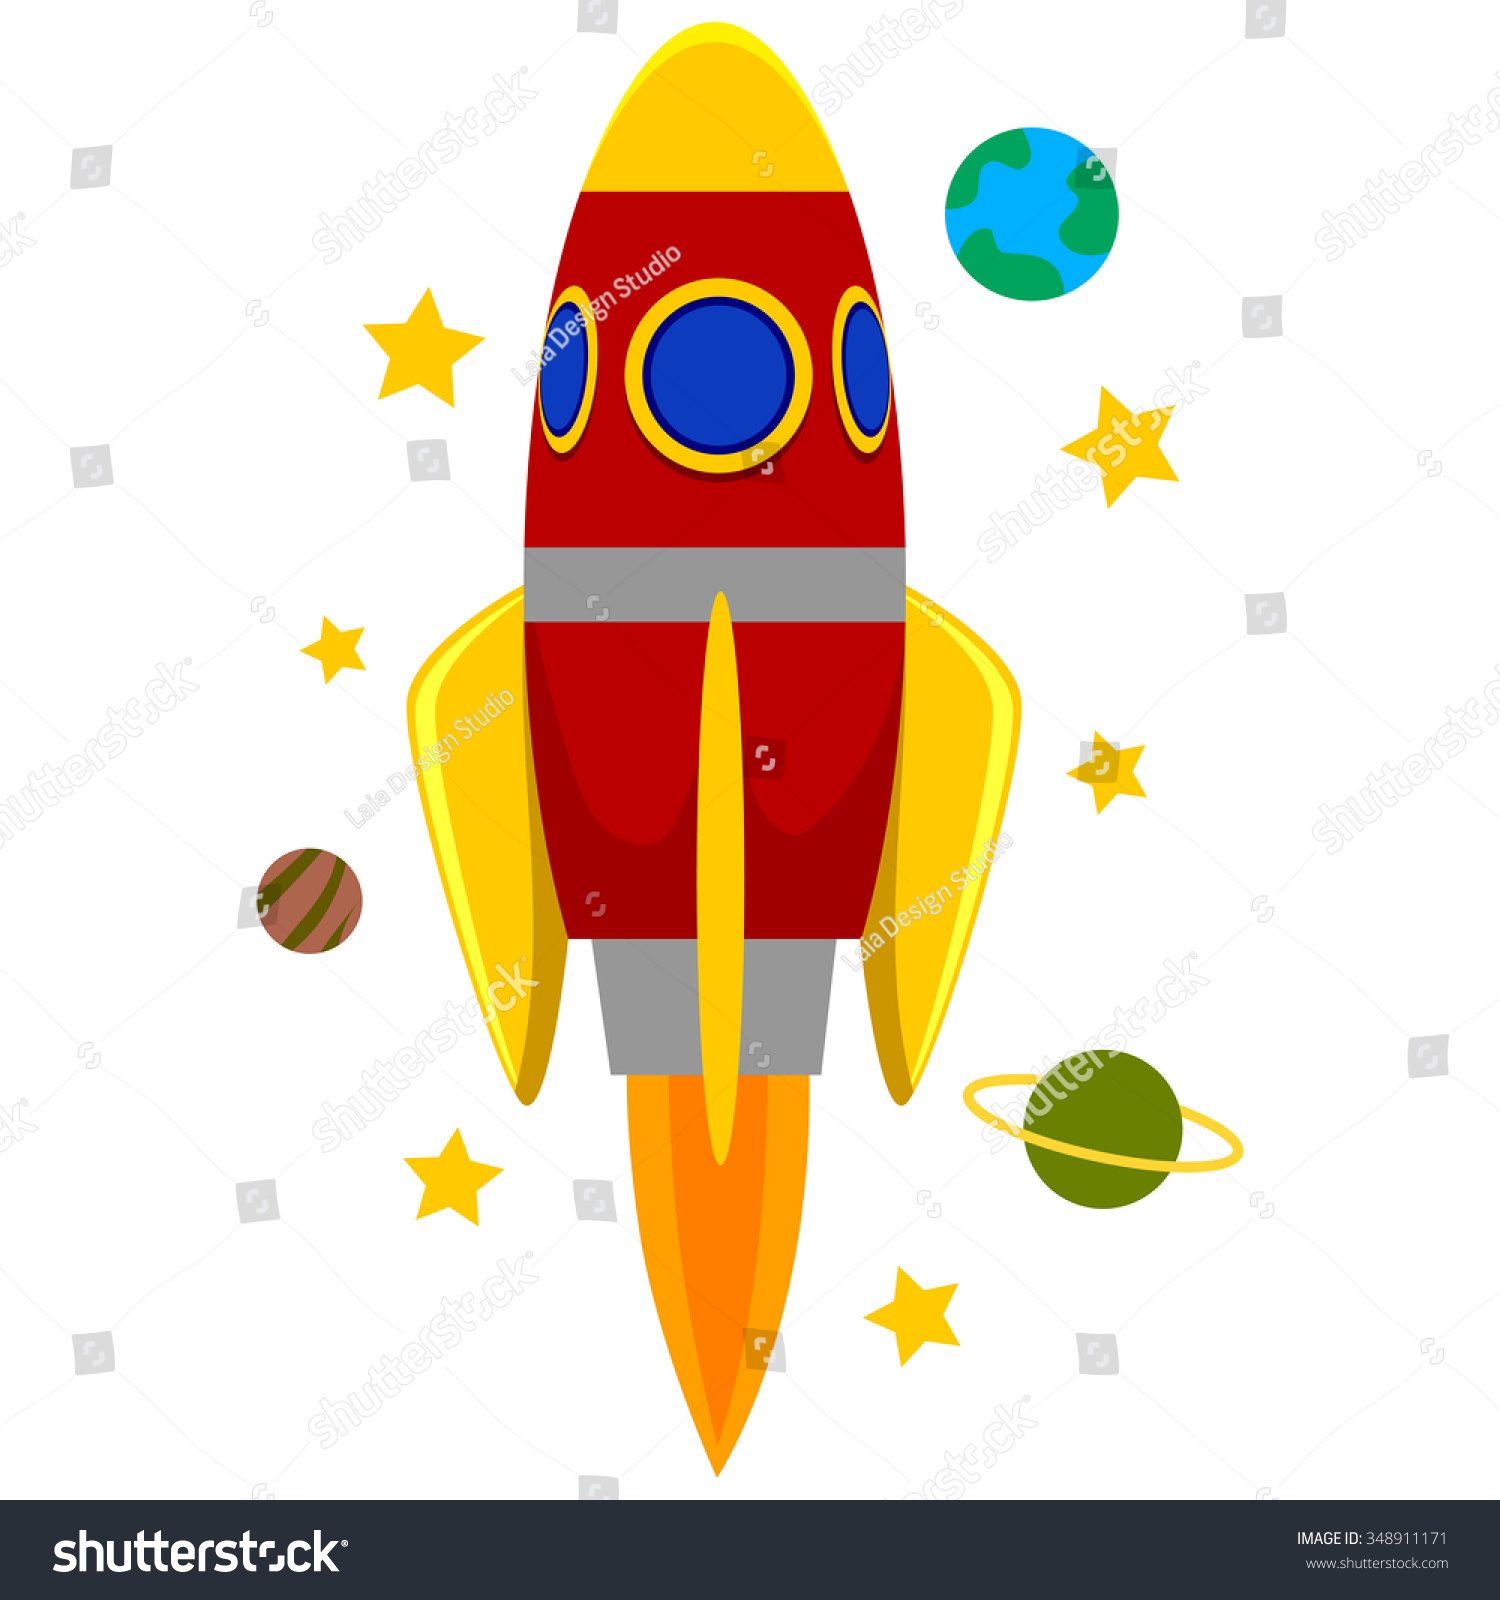 Image result for images of rocket